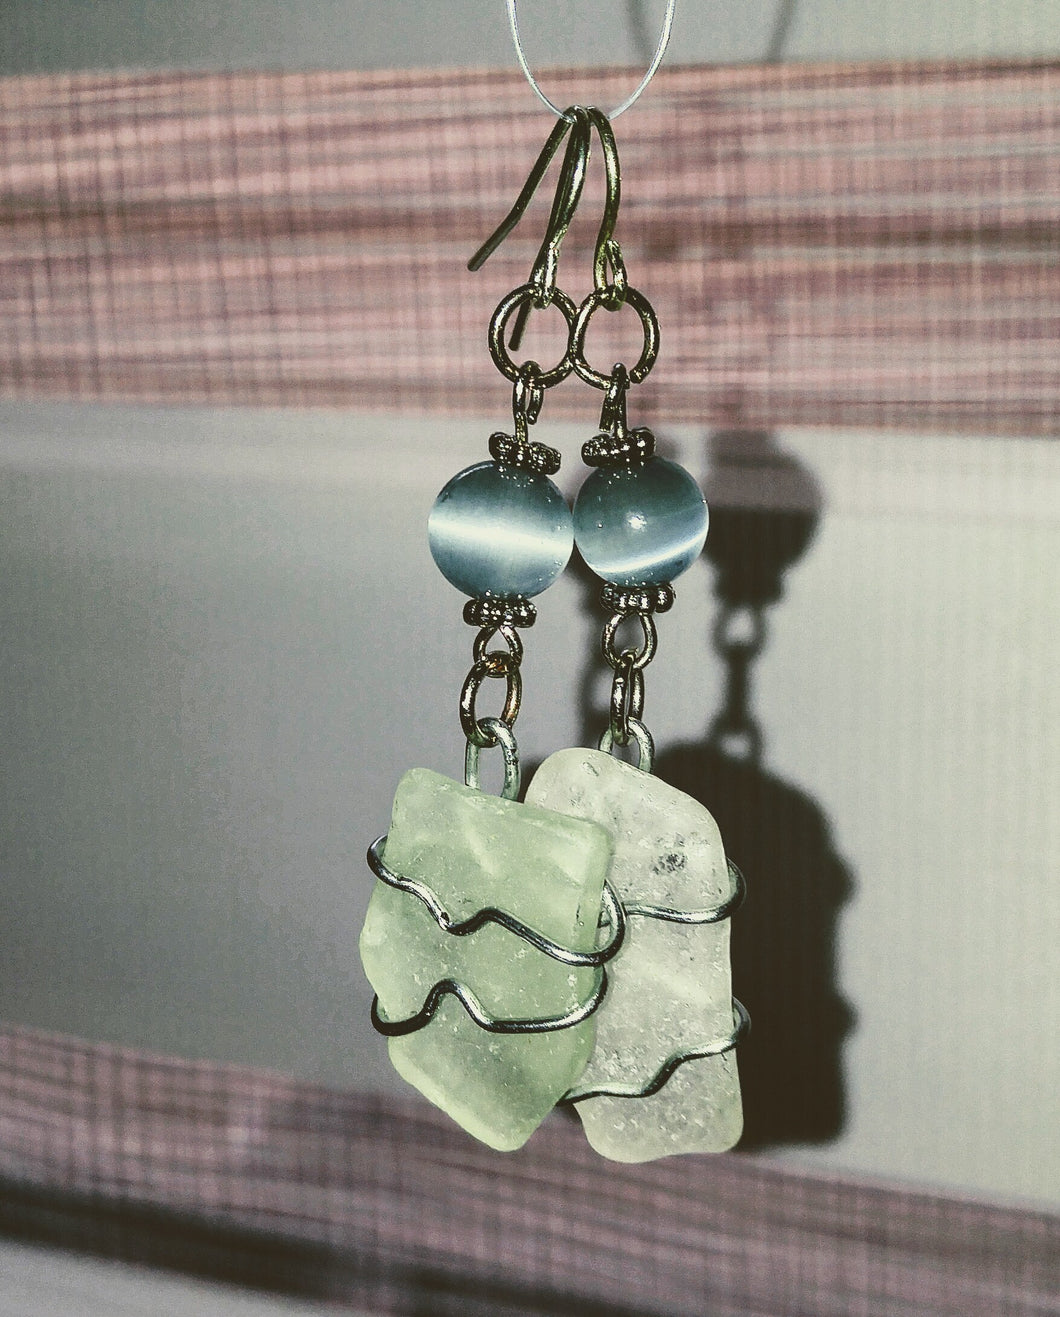 Seaglass gypsy earrings